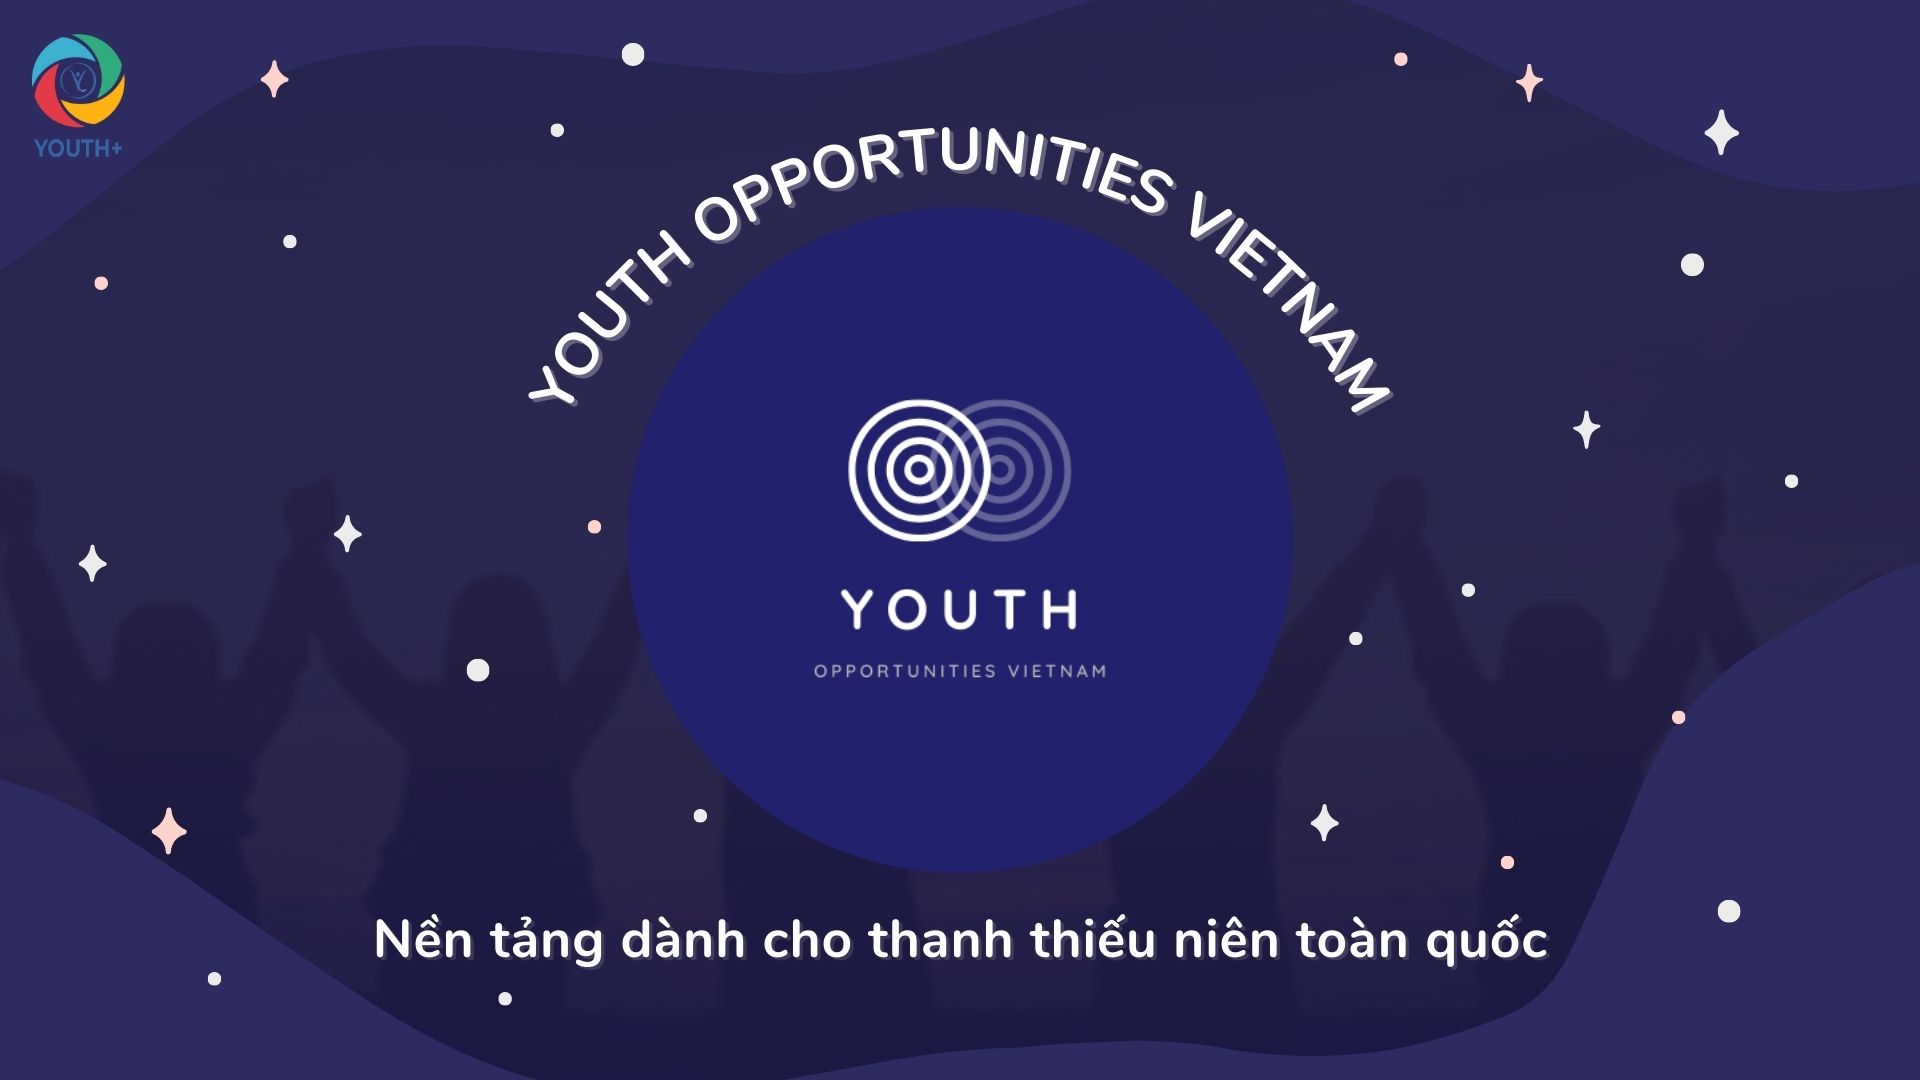 [NỀN TẢNG] YOUTH OPPORTUNITIES VIETNAM: Xứng đáng là nền tảng tìm kiếm cơ hội phát triển dành cho giới trẻ LỚN NHẤT Việt Nam?